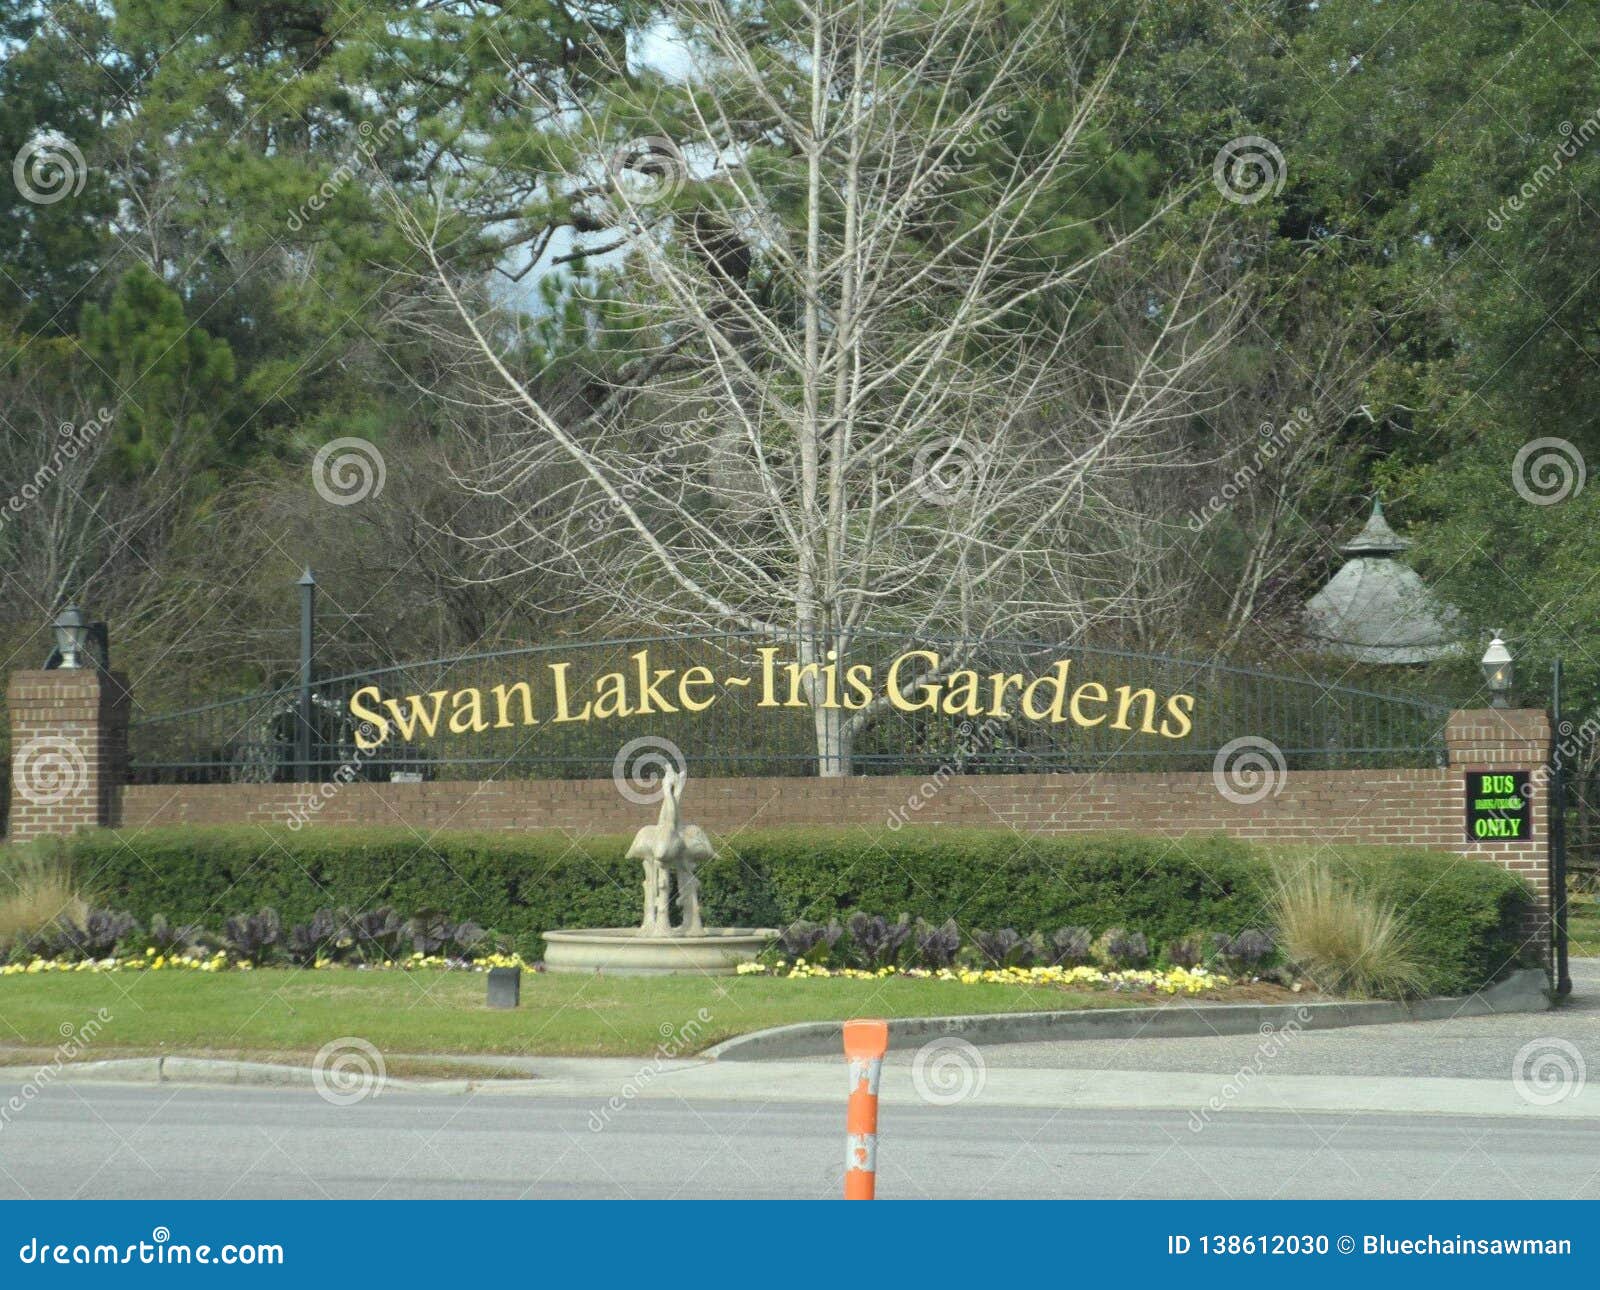 Swan Lake Iris Gardens Signage Editorial Image Image Of Lake